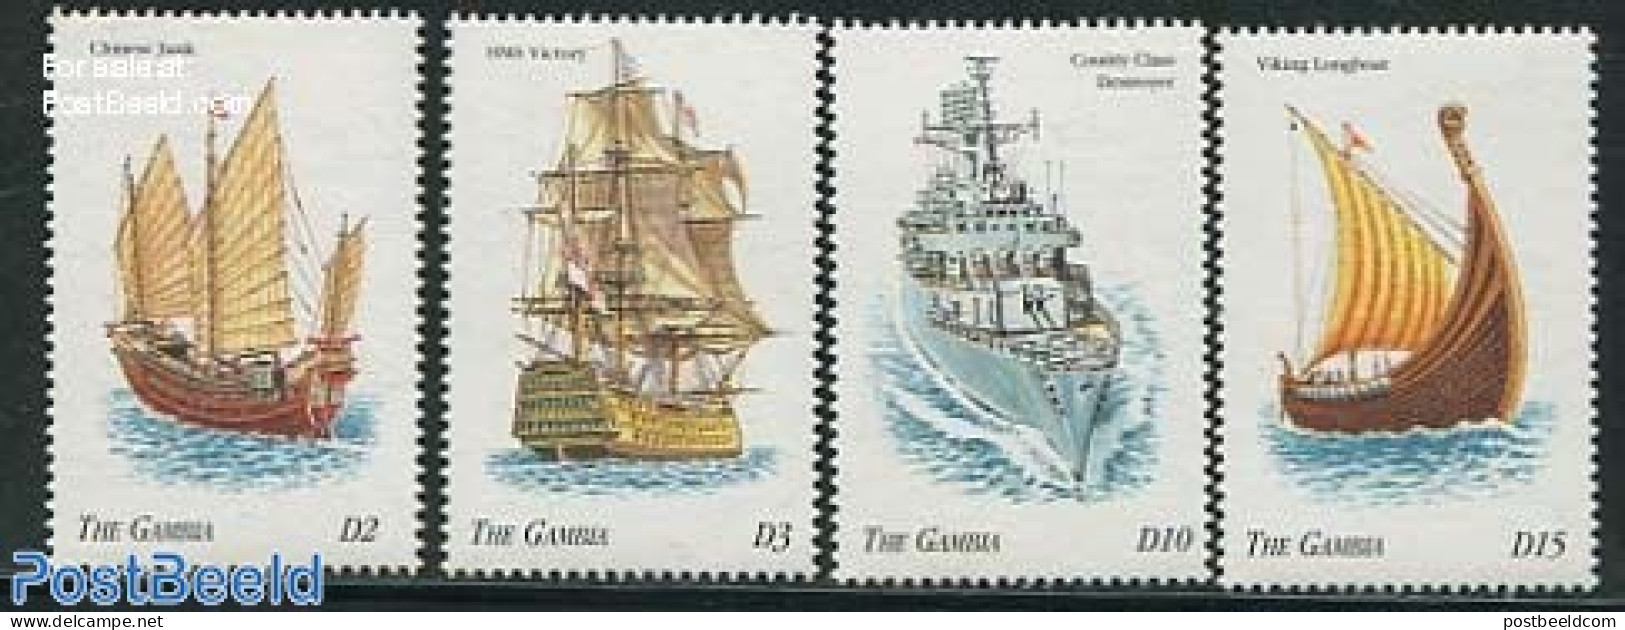 Gambia 1998 Ships 4v, Mint NH, Transport - Ships And Boats - Boten